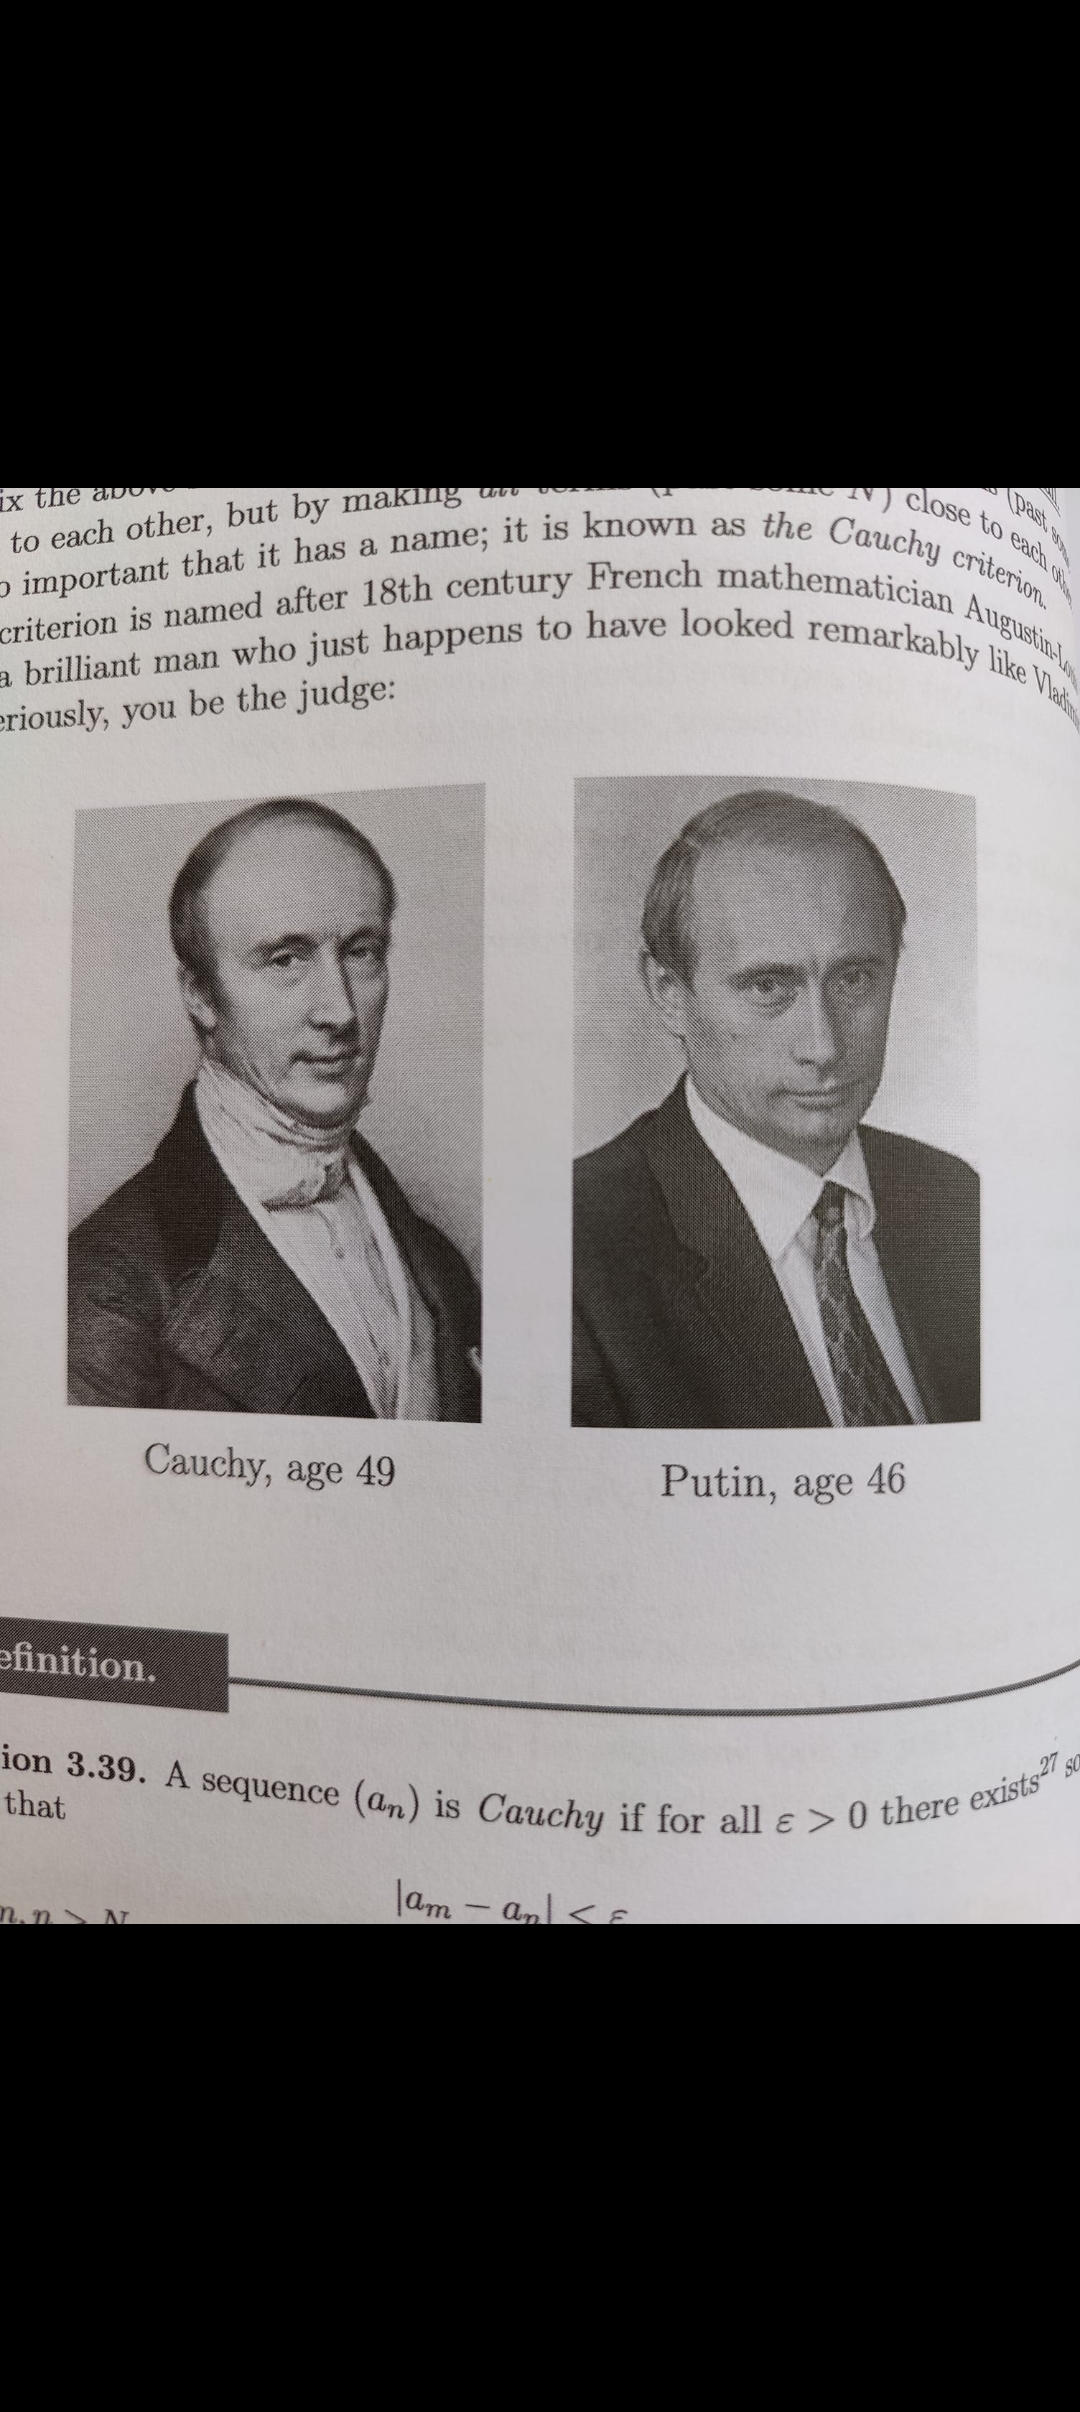 Cauchy and Puting